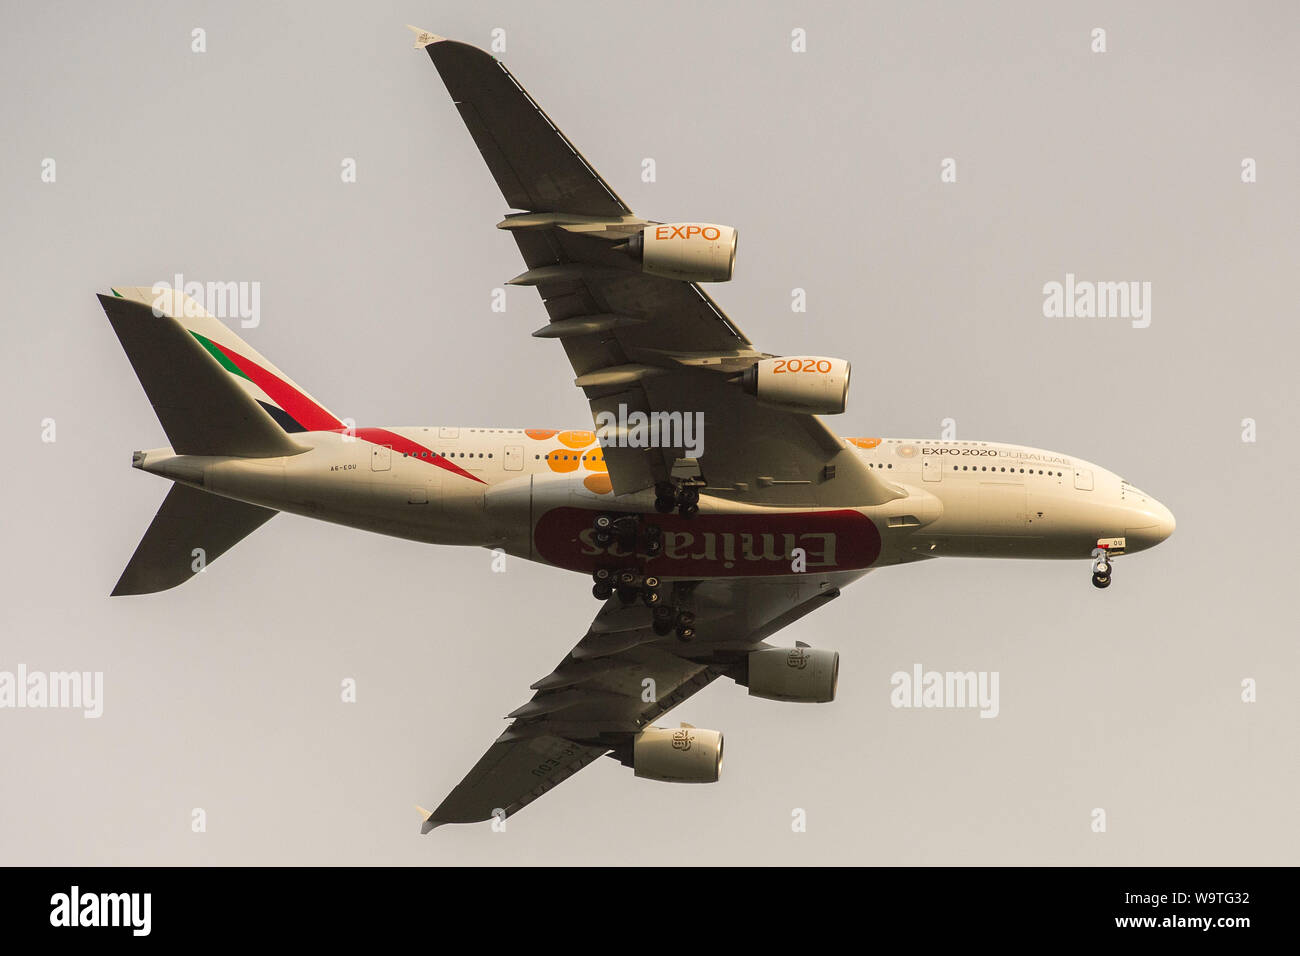 Glasgow, UK. 27. April 2019. Stock Bild Emirates A380 Super Jumbo Jet-Leitungen, die auf Annäherung für die Landung. Stockfoto